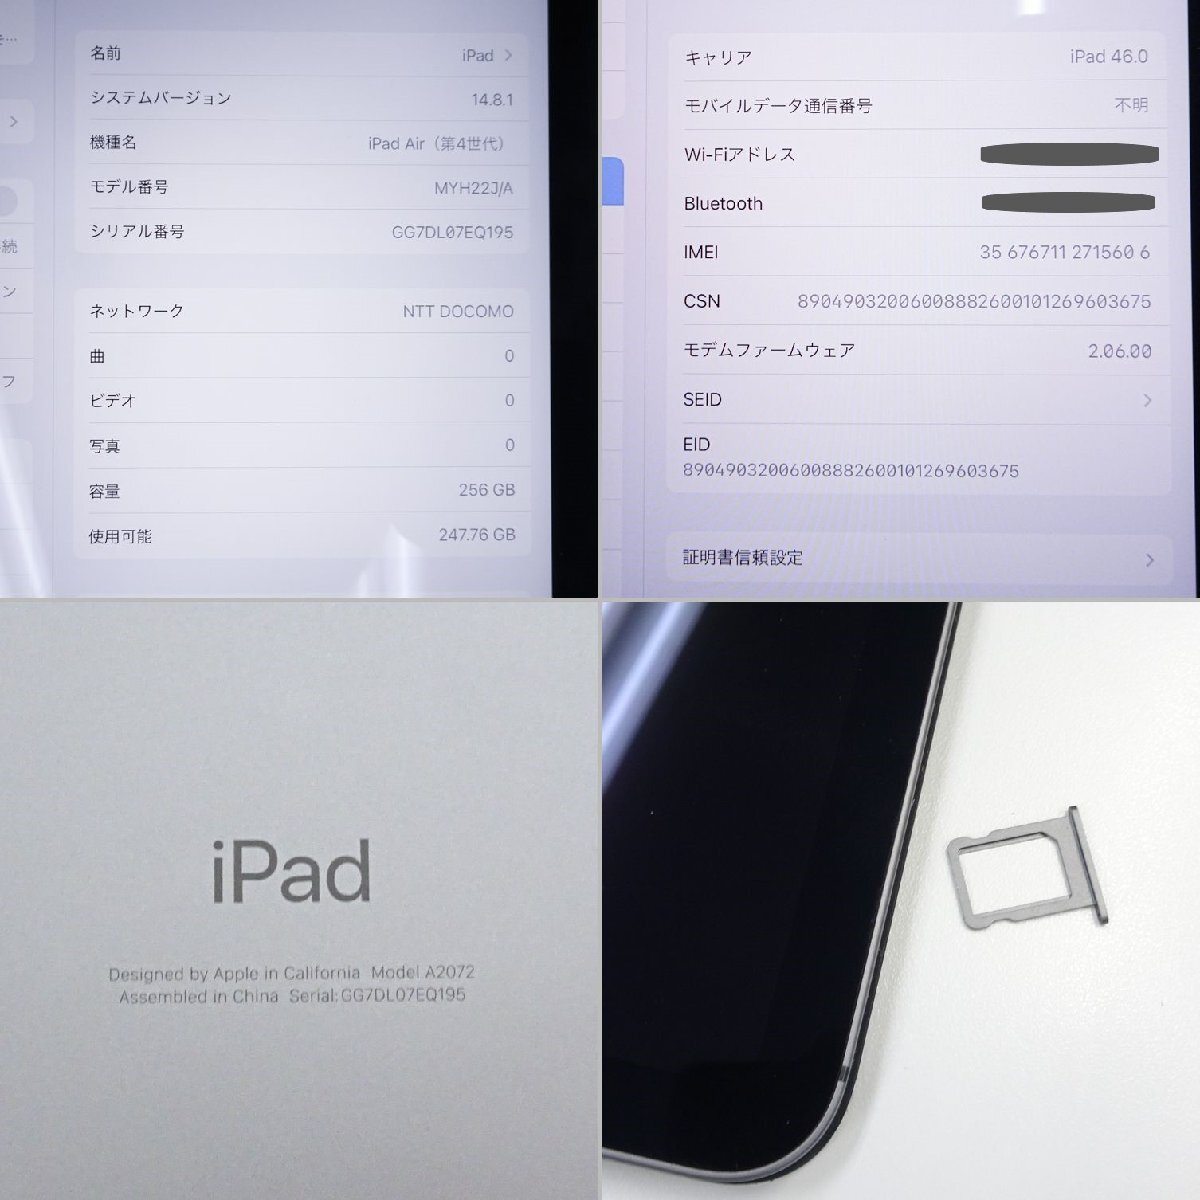 [1 иен ] Apple Apple iPad Air no. 4 поколение 10.9 дюймовый Wi-Fi+Cellular 256GB MYH22J/A Space серый ограничение использования 0 электризация проверка первый период . settled 41506